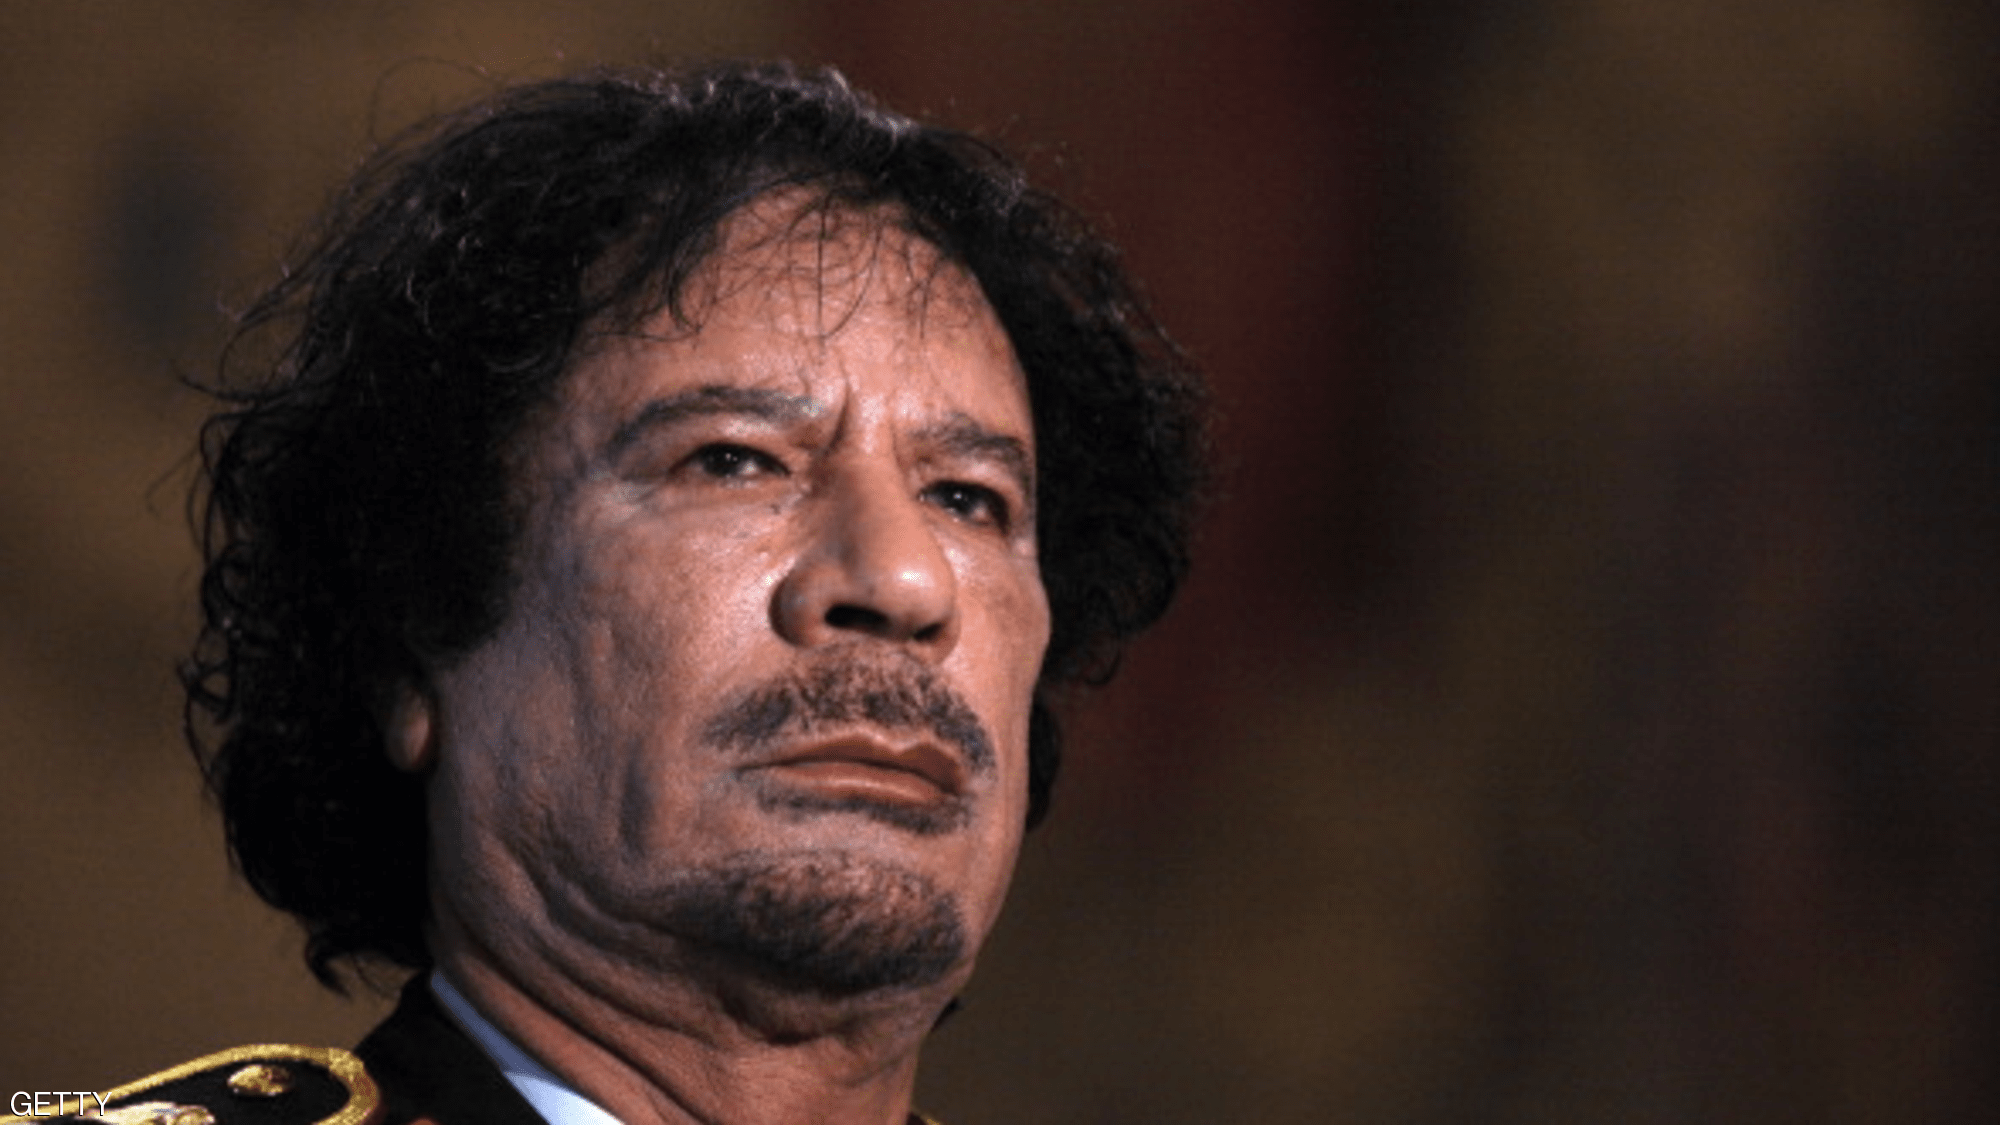   شاهد|| الرئيس الليبى الراحل معمر القذافى يحذر شعبه من أطماع تركيا